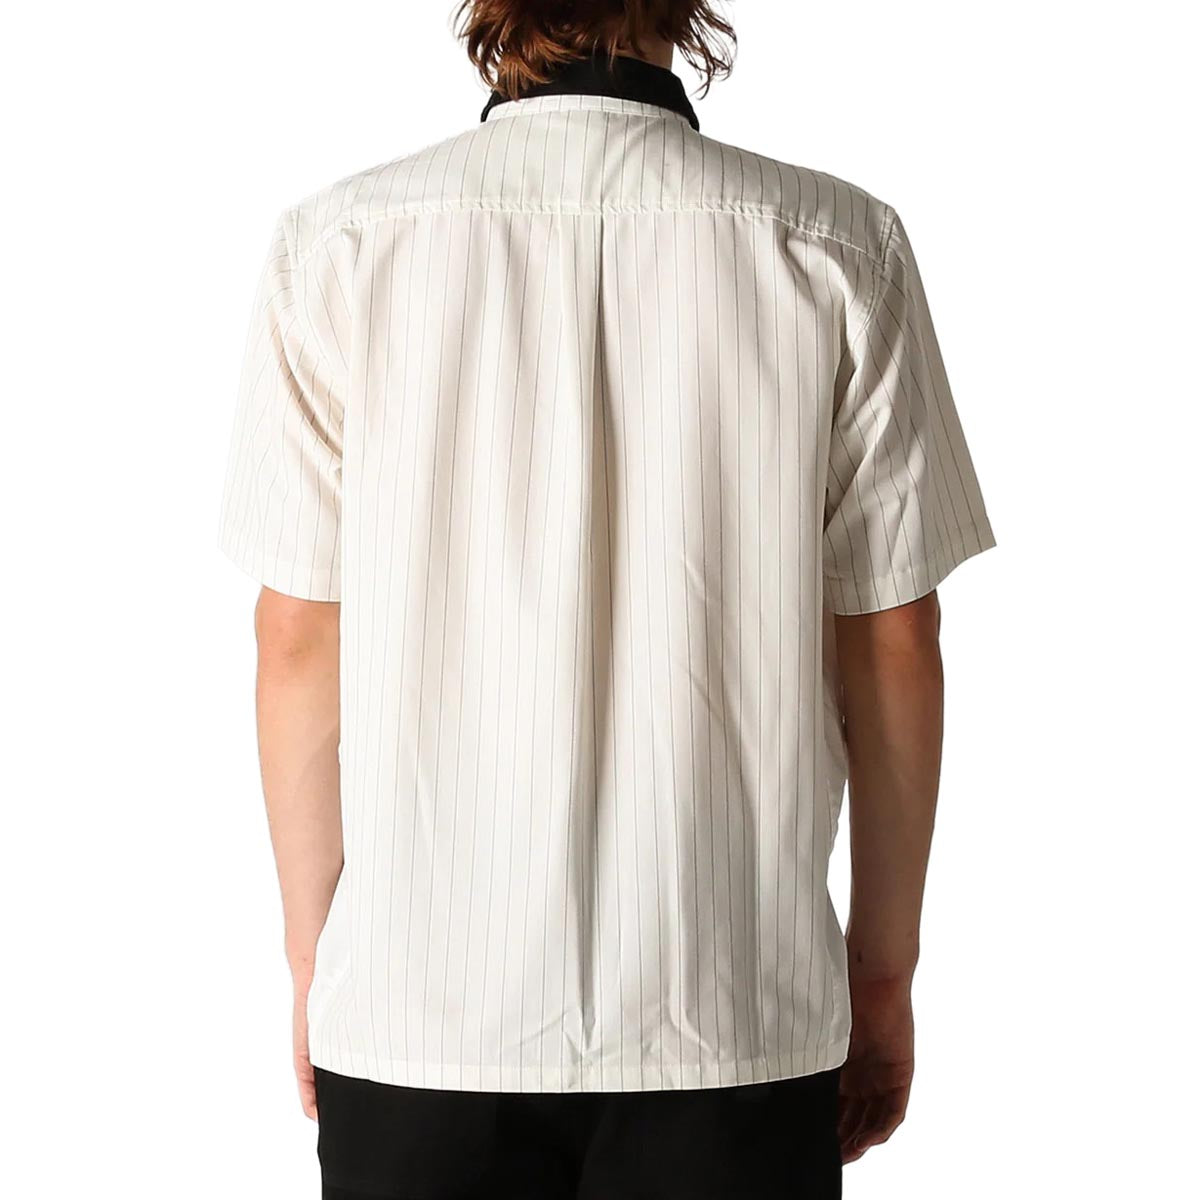 Former Vivian Pinstripe Shirt - White image 2